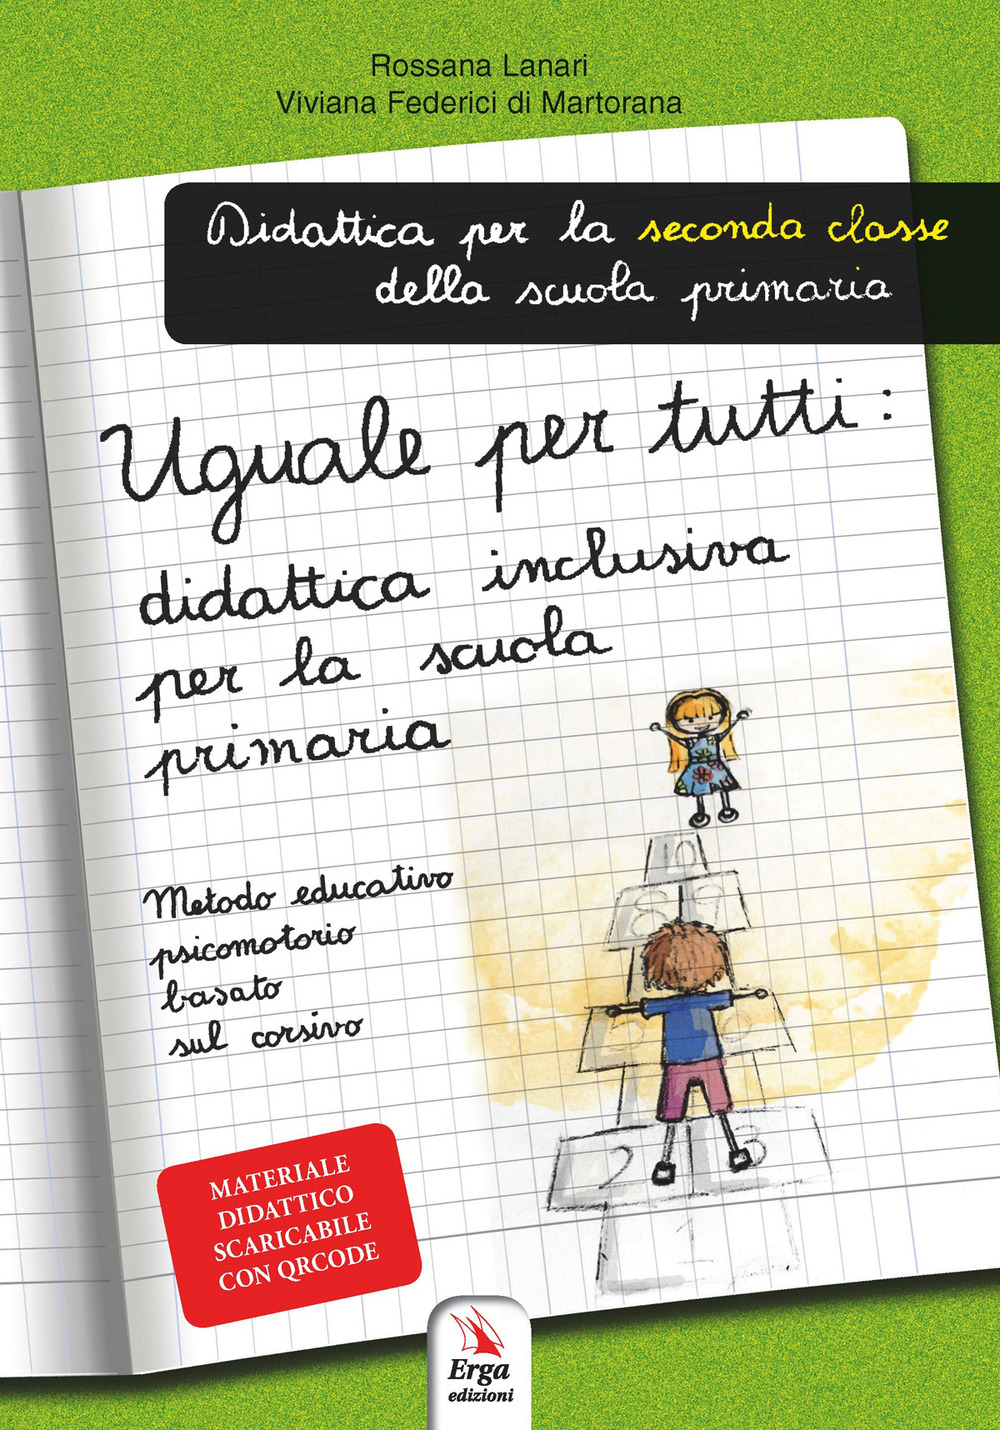 Image of Uguale per tutti: didattica inclusiva per la primaria. Metodo educativo psicomotorio basato sul corsivo